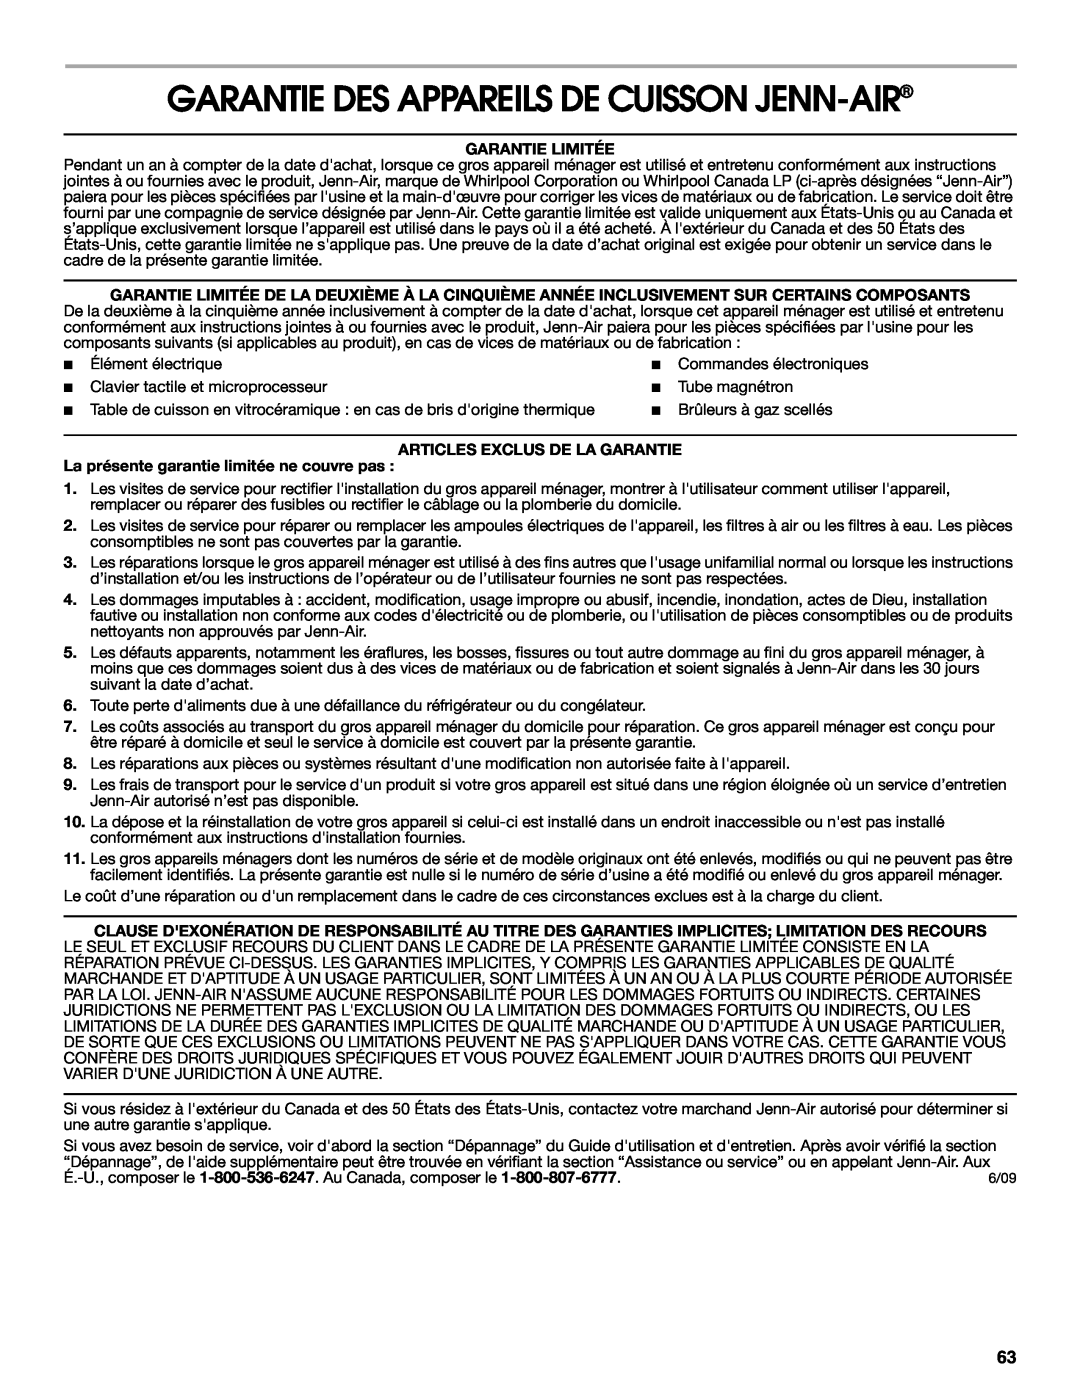 Jenn-Air JGS8850, JGS8860 Garantie Des Appareils De Cuisson Jenn-Air, Garantie Limitée, Articles Exclus De La Garantie 